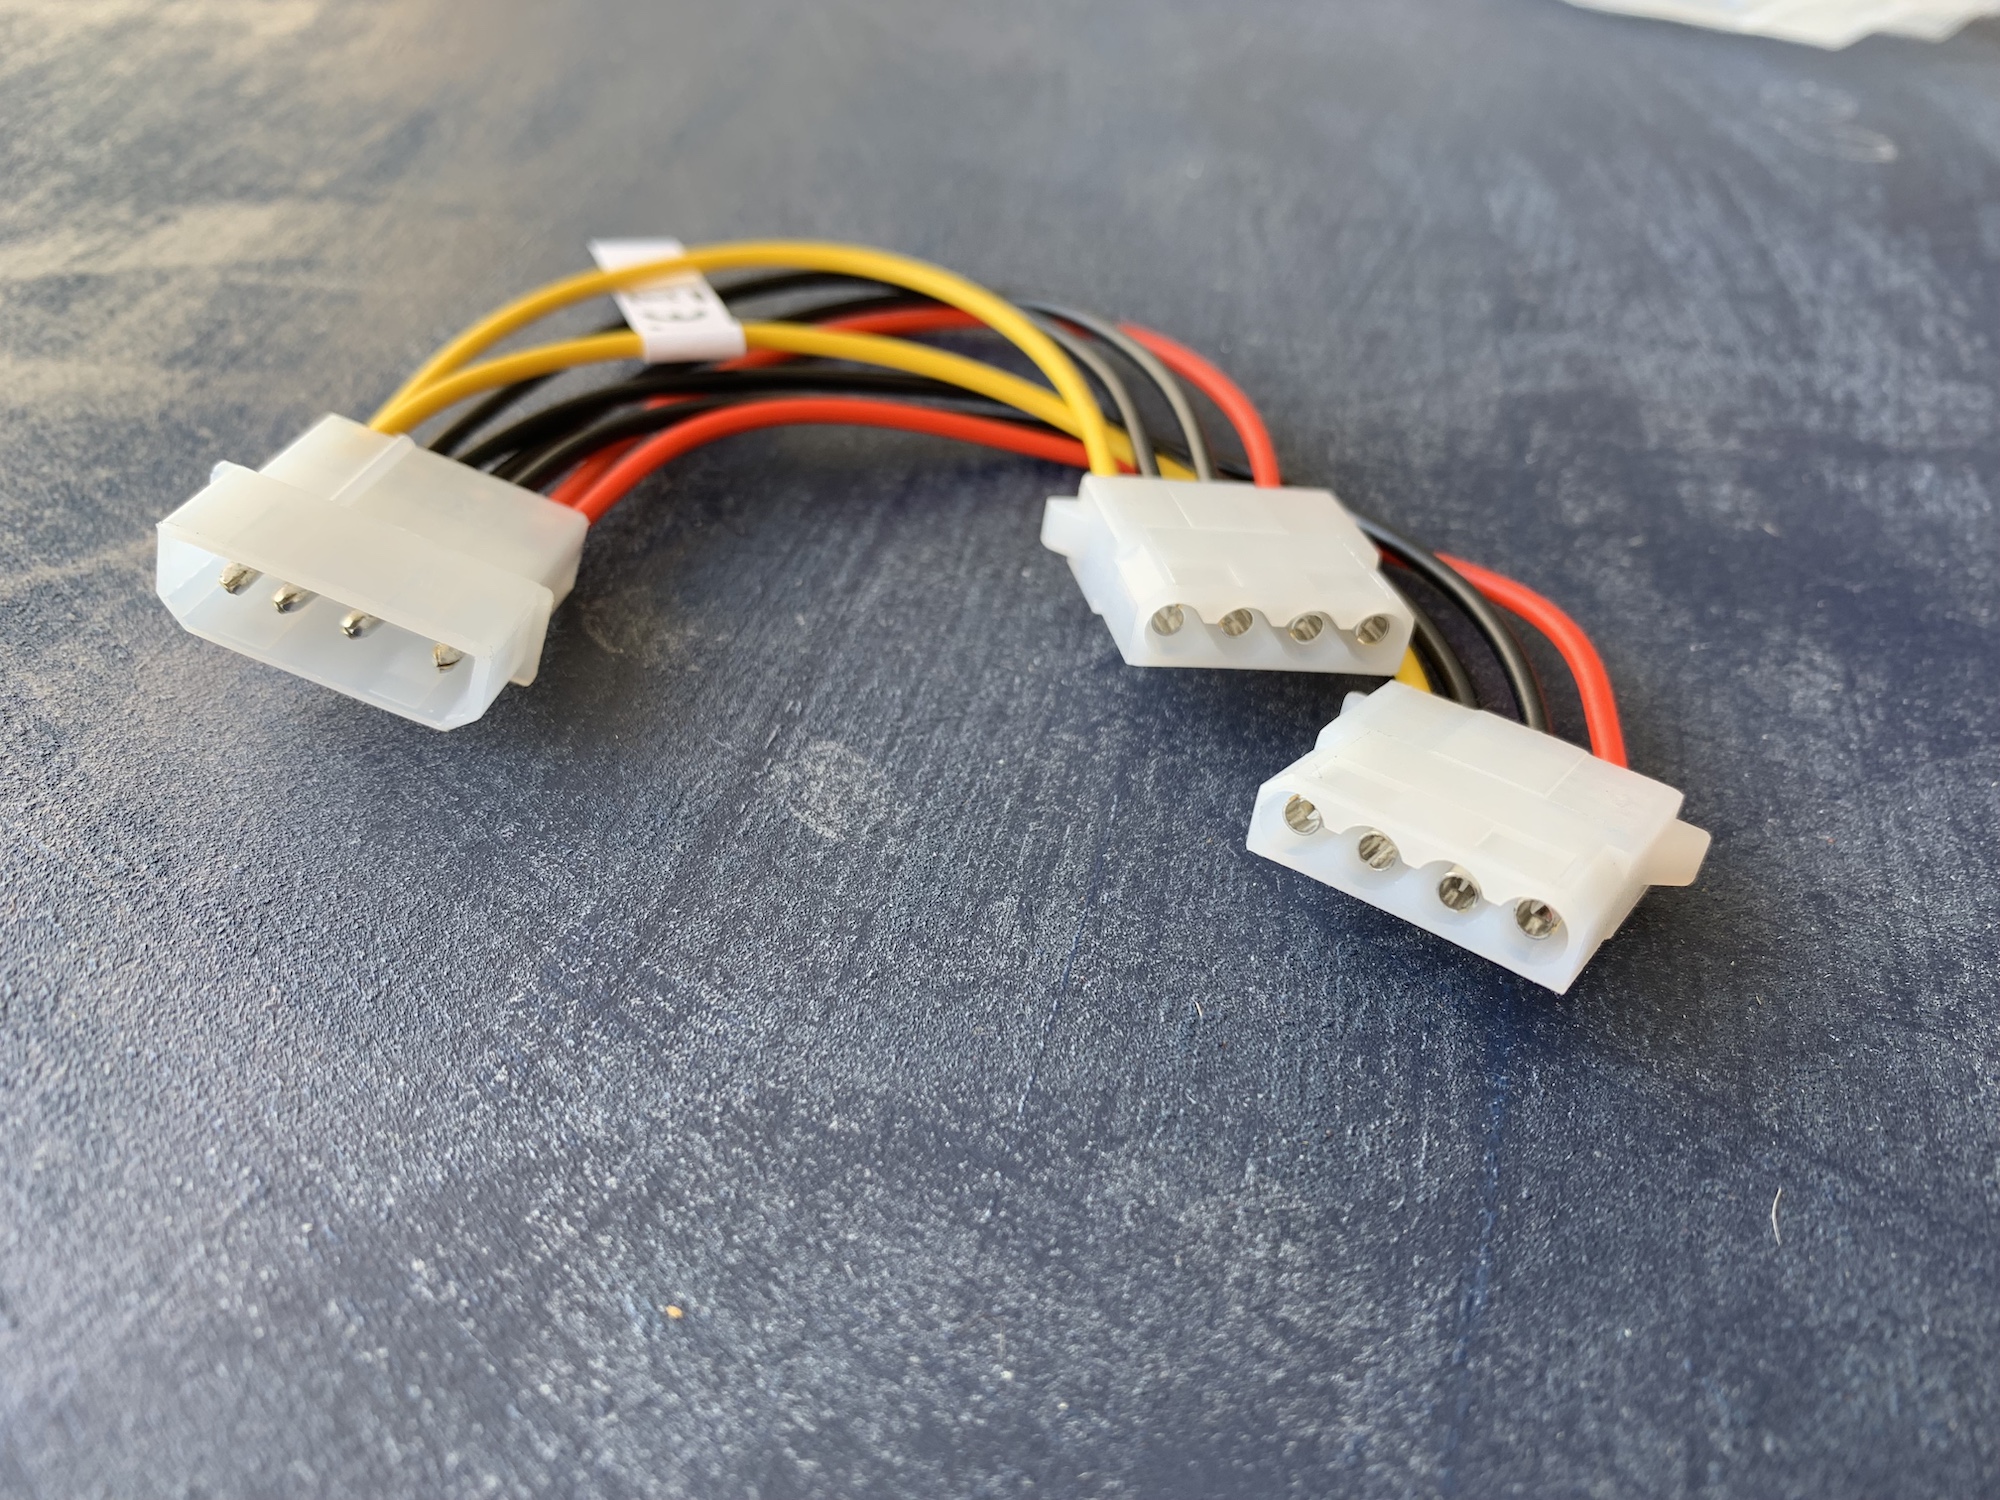 Regular Molex splitter cable